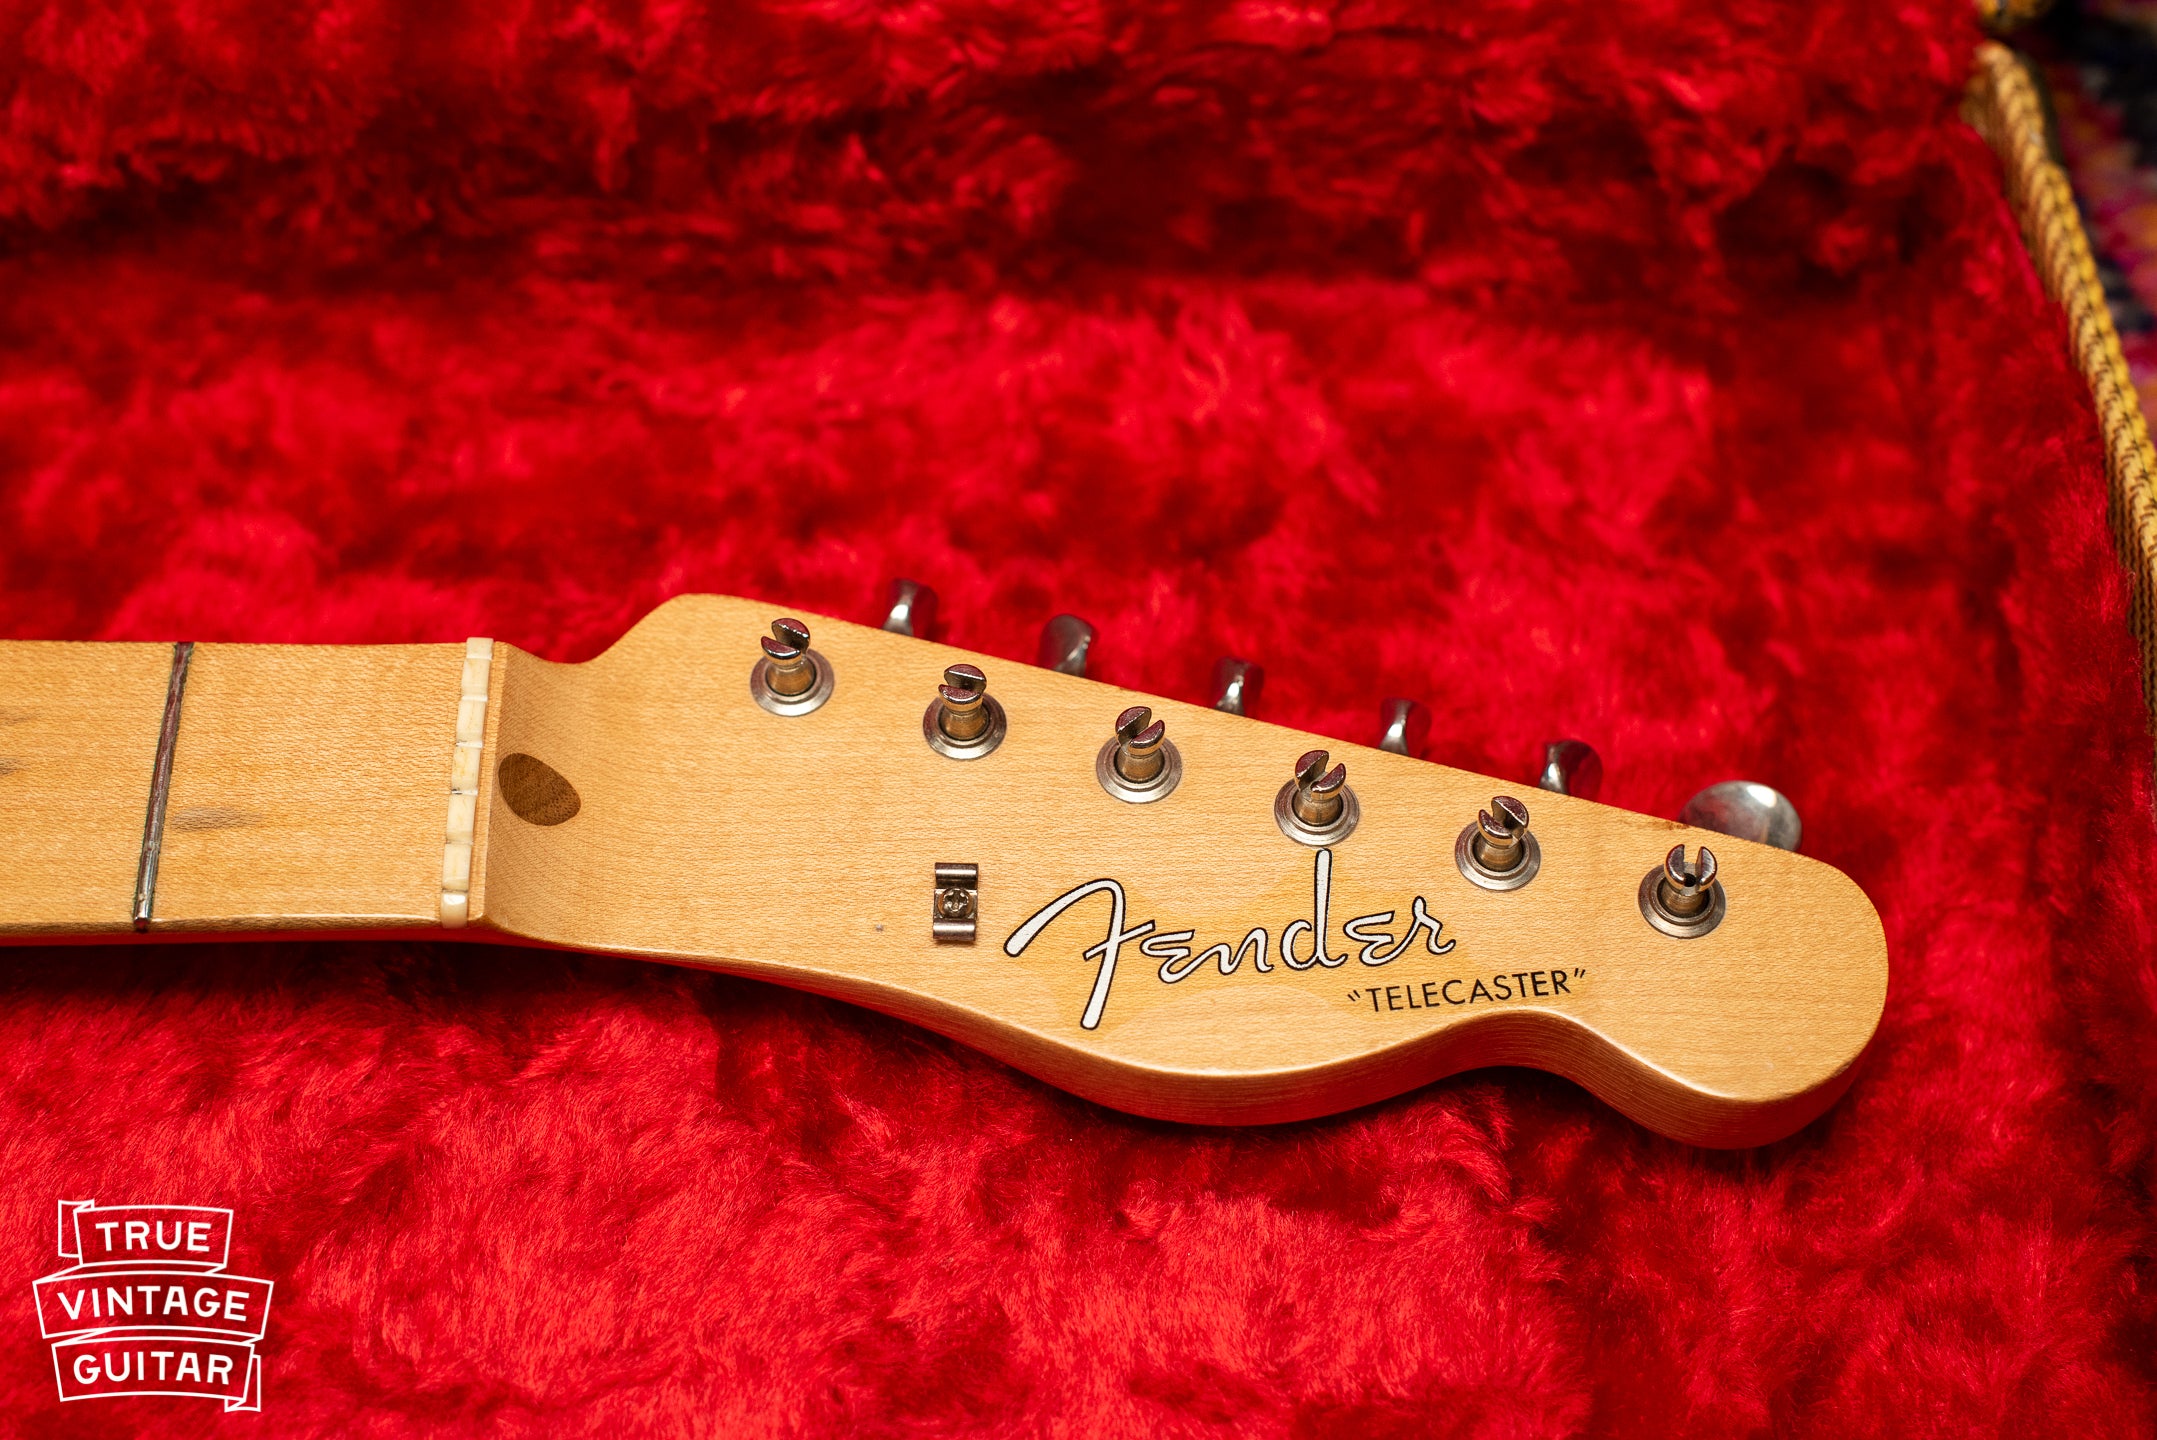 1957 Fender Telecaster Blond headstock, string tree, Fender logo